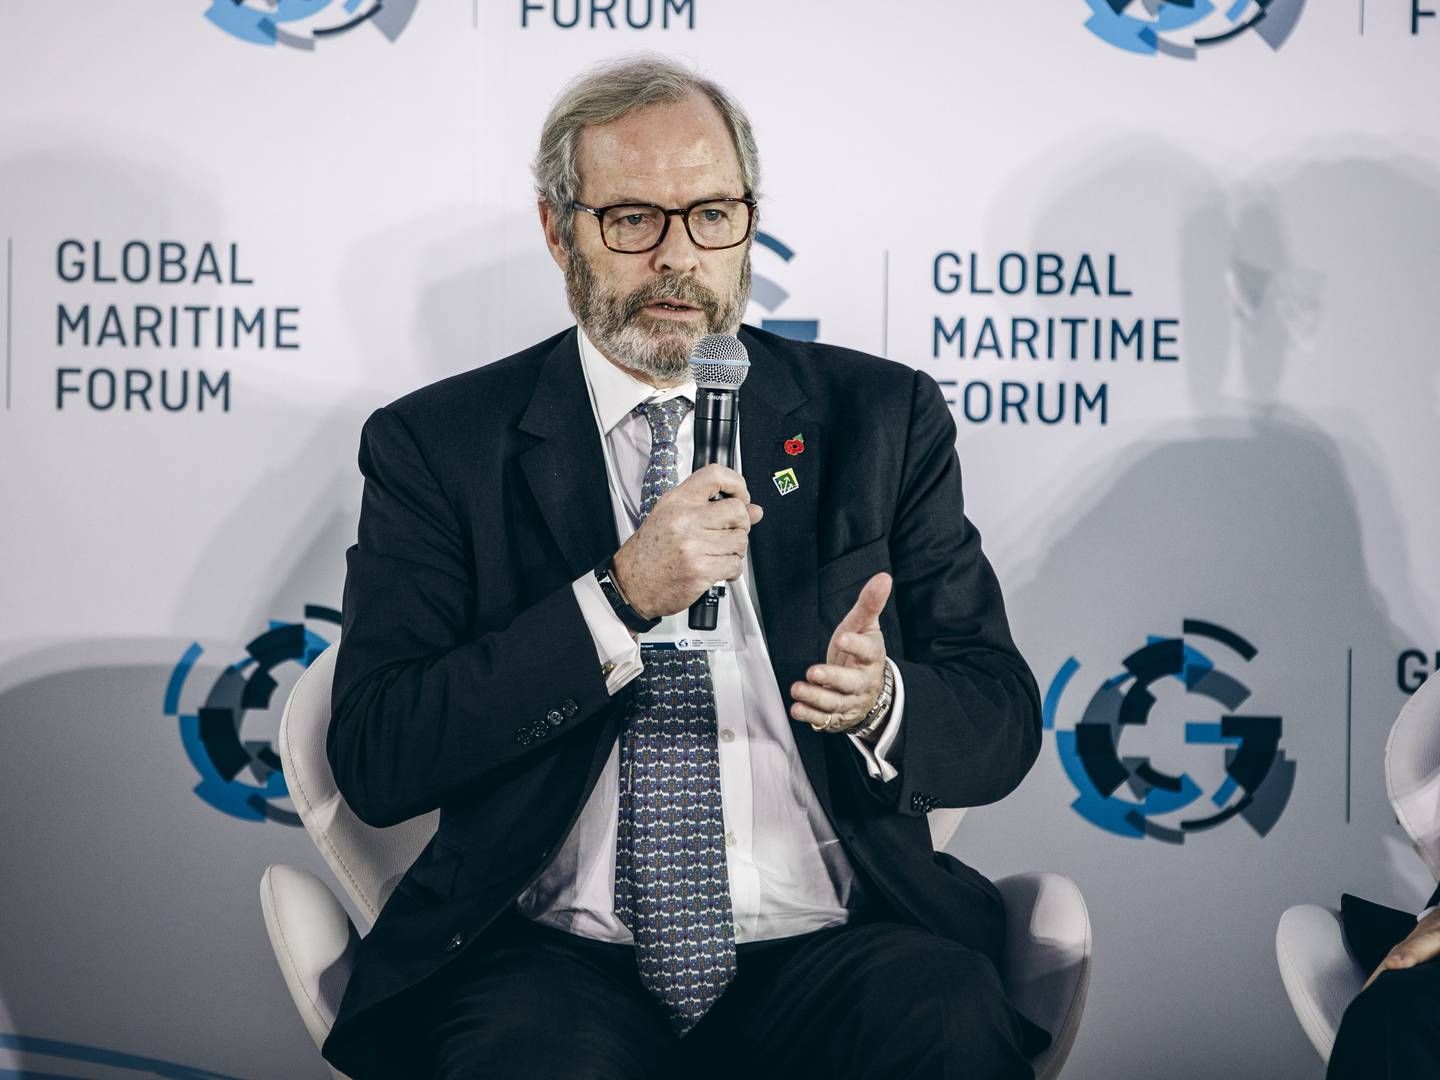 Foto: Global Maritime Forum